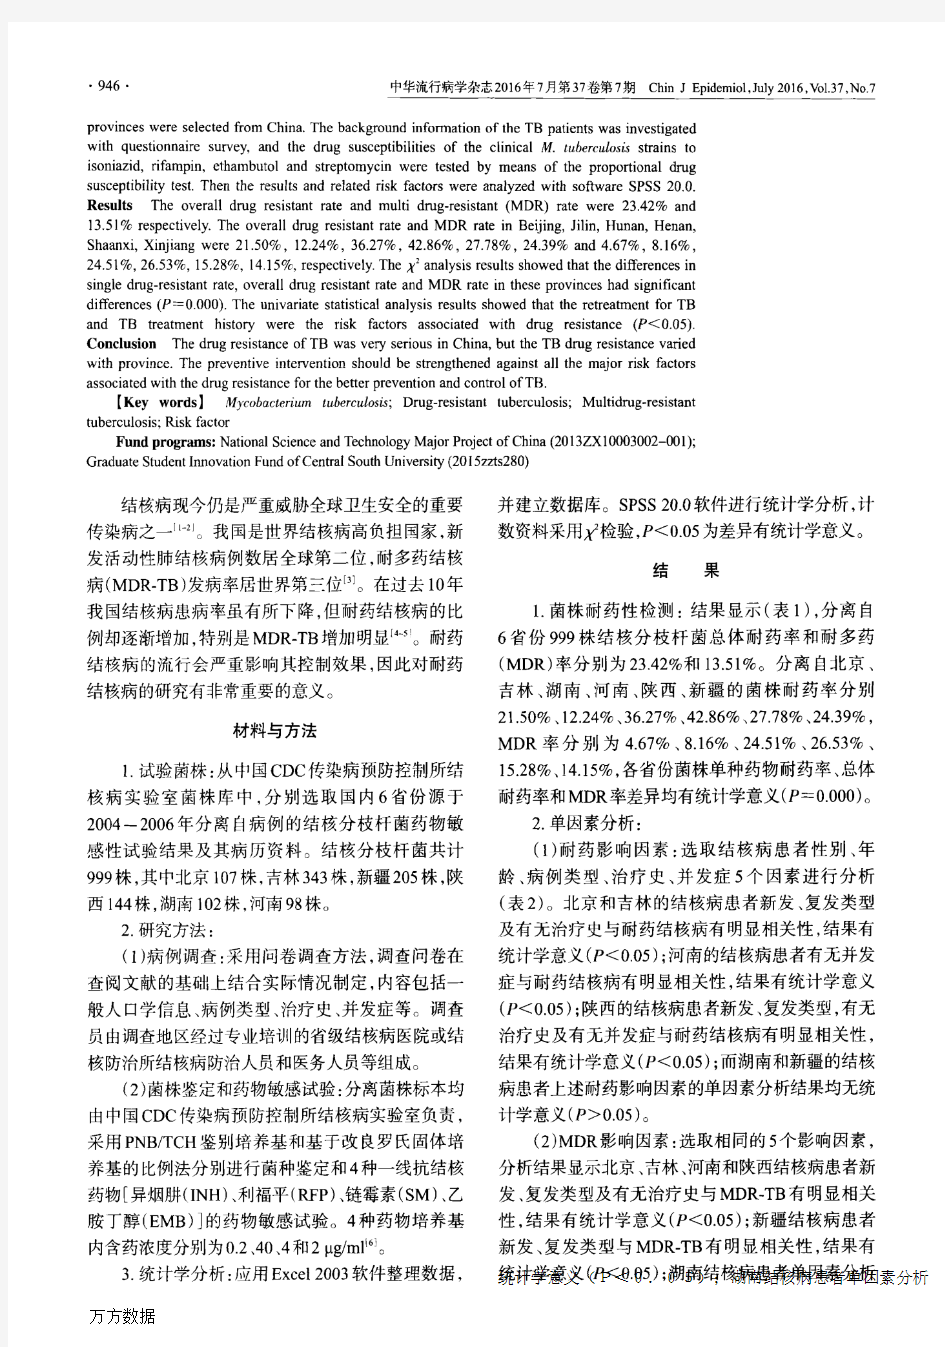 中国6个省份结核分枝杆菌耐药状况及影响因素分析论文